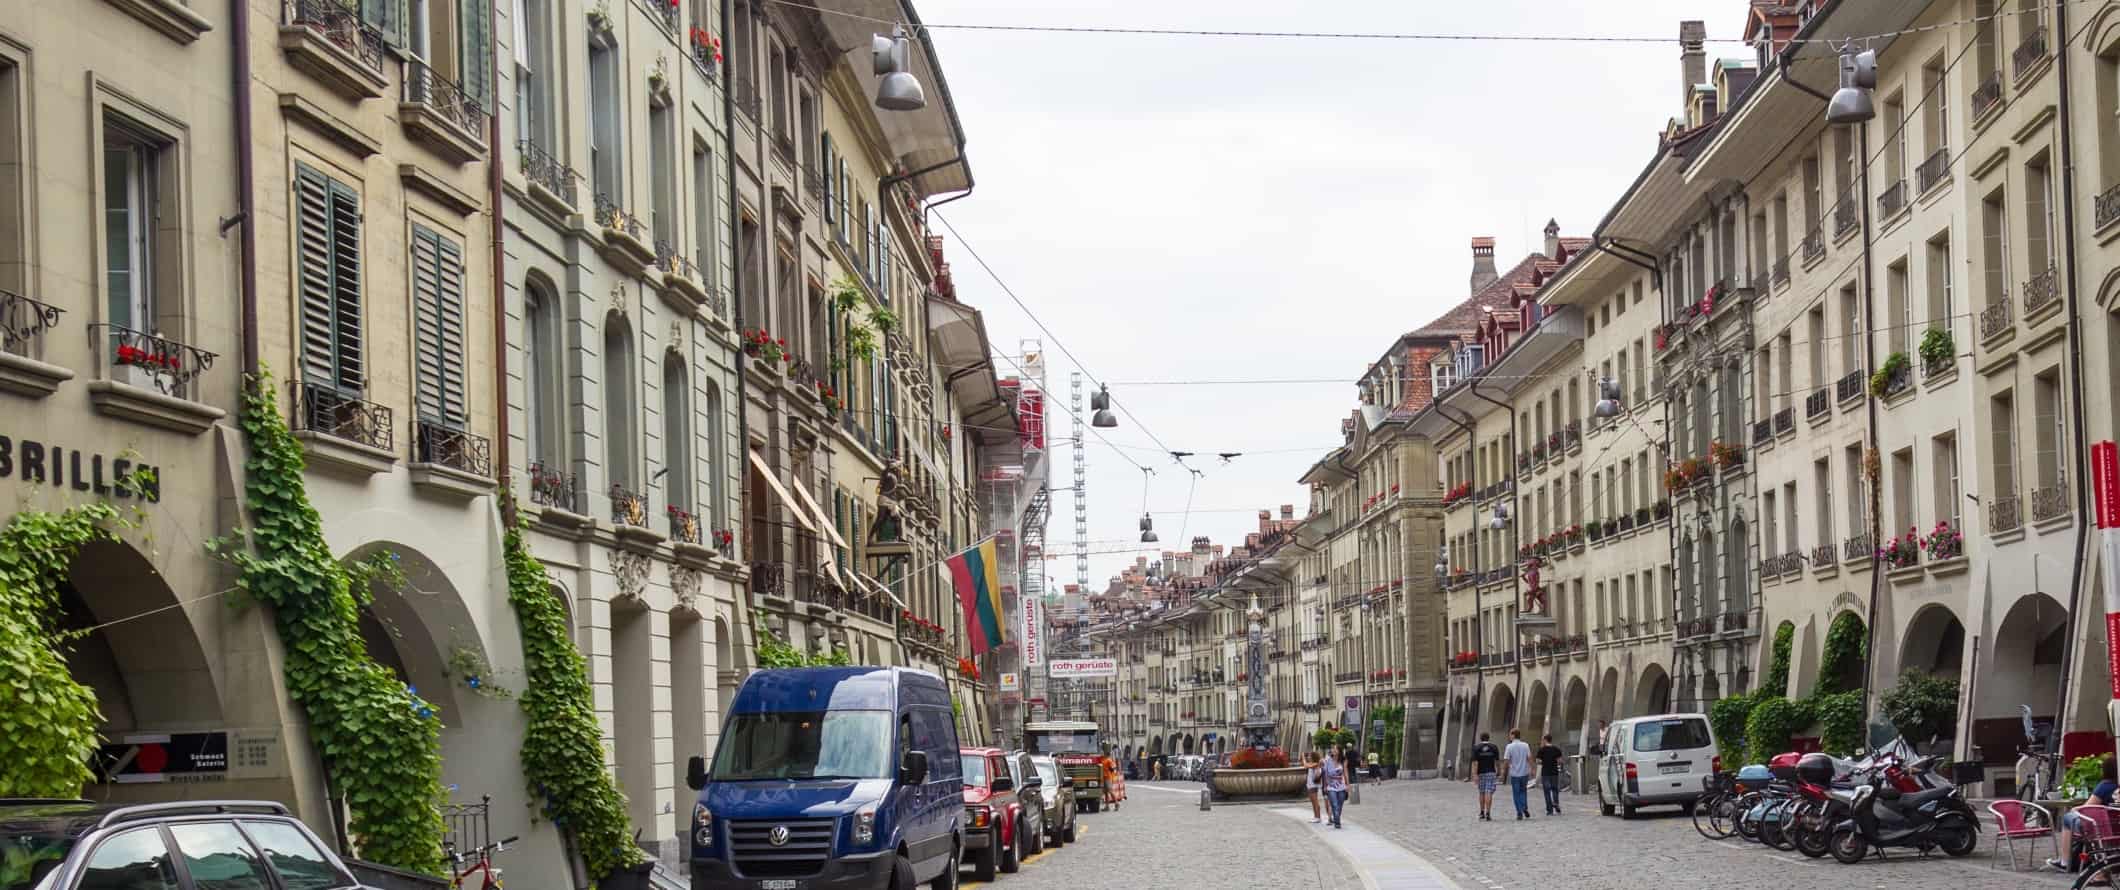 Pessoas caminham por uma rua de paralelepípedos no centro histórico de Berna, Suíça